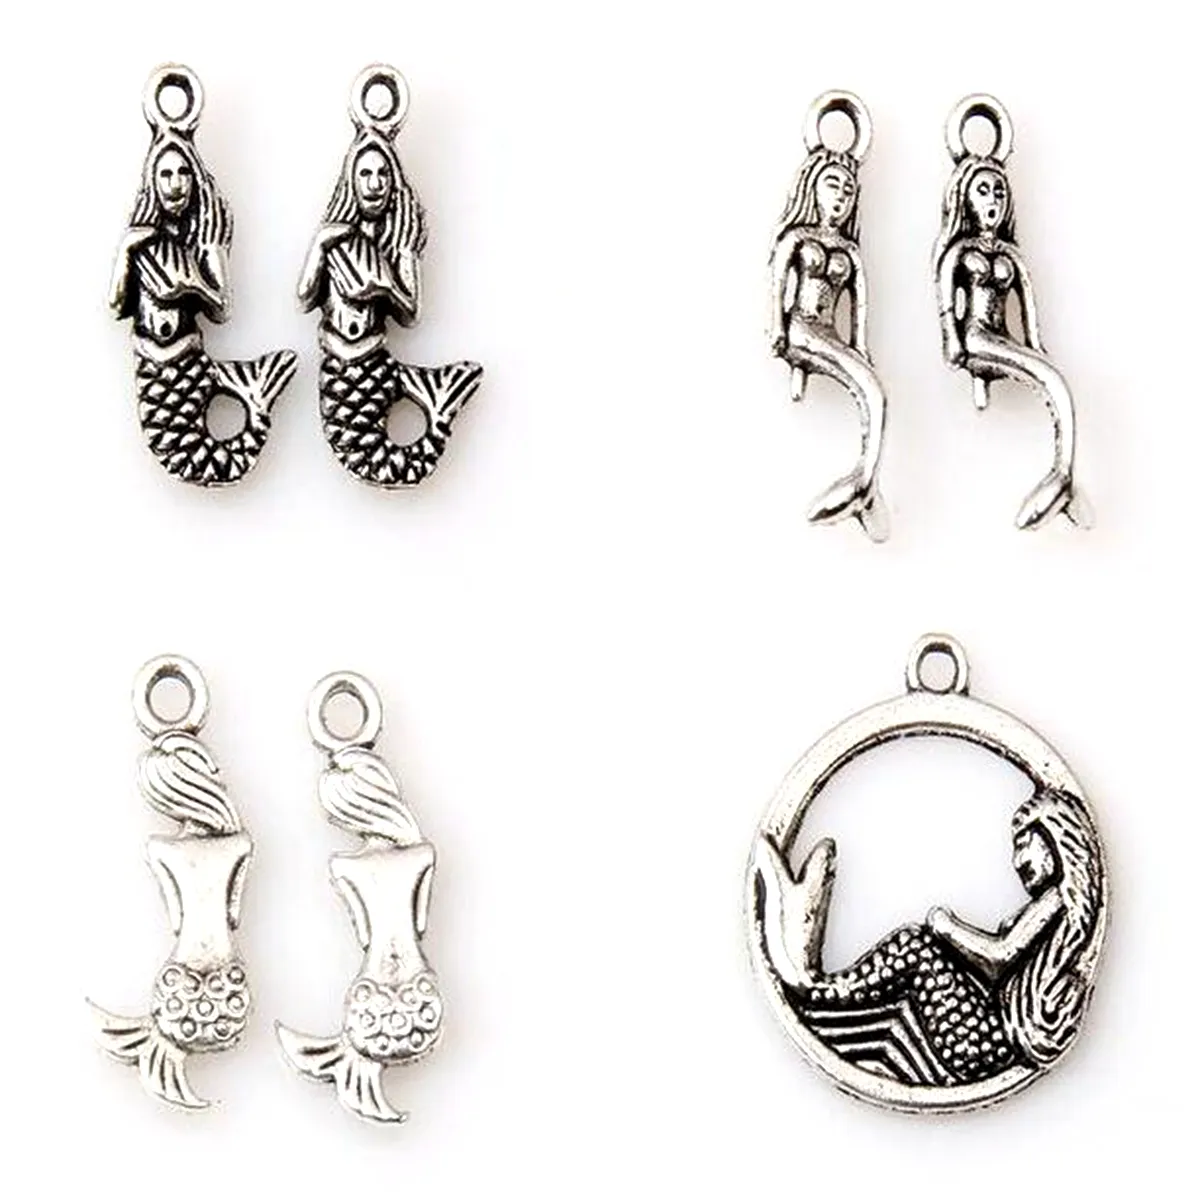 Alaşım Mermaid Charms Kolye Takı Yapımı için Bilezik Kolye DIY Aksesuarları Antik Gümüş 120 adet